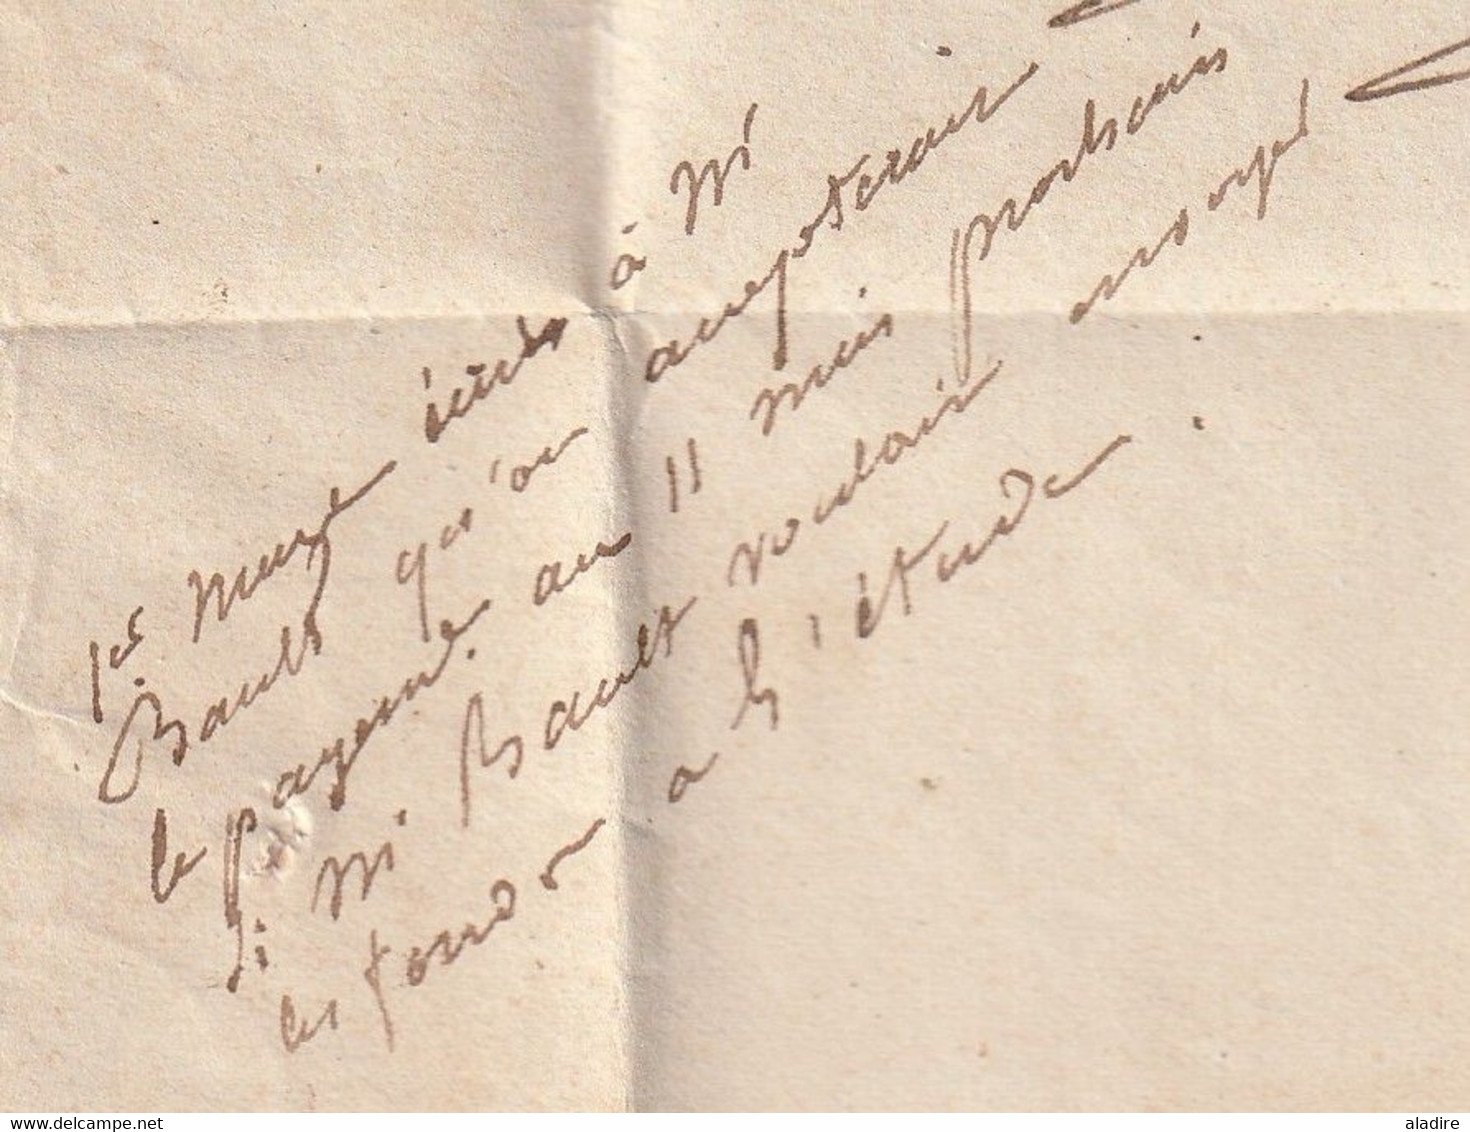 1840 - Cursive 72 PONTCHARTRAIN sur Lettre pliée avec correspondance vers Trappes - dateur et cad arrivée